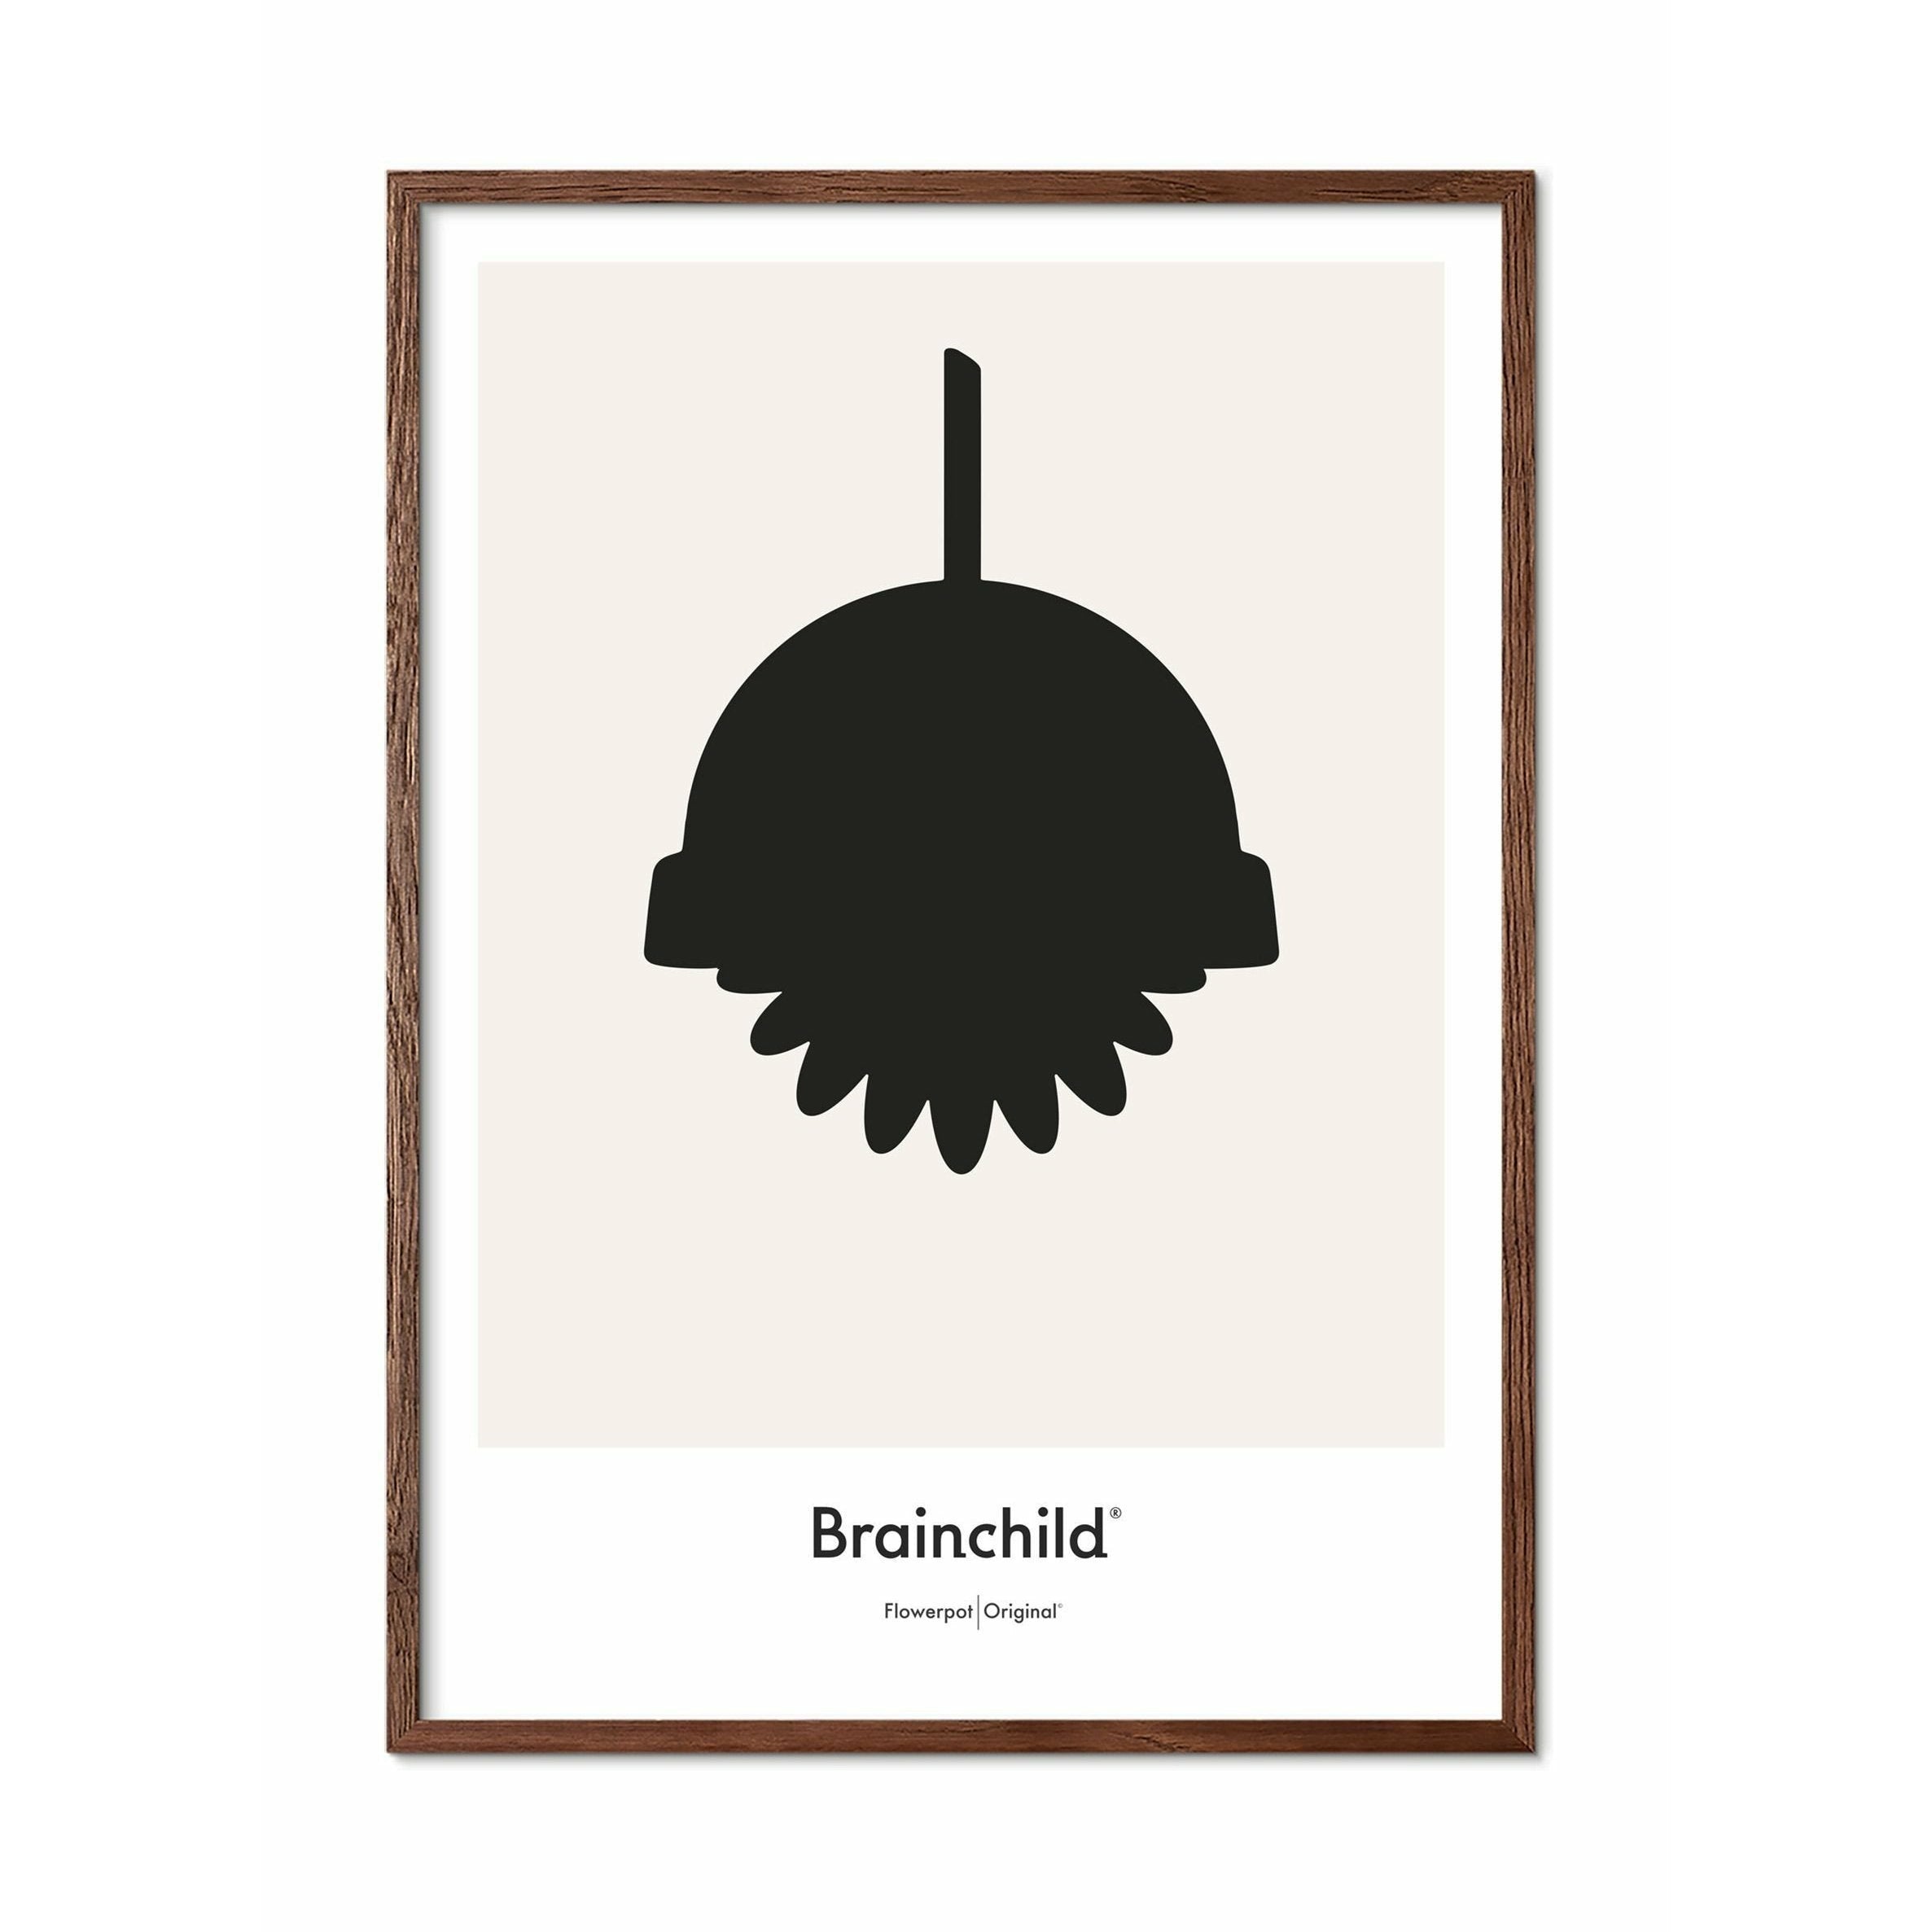 Plakát designu Brainchild Flowerpot Design, rám vyrobený z tmavého dřeva 30 x40 cm, šedá